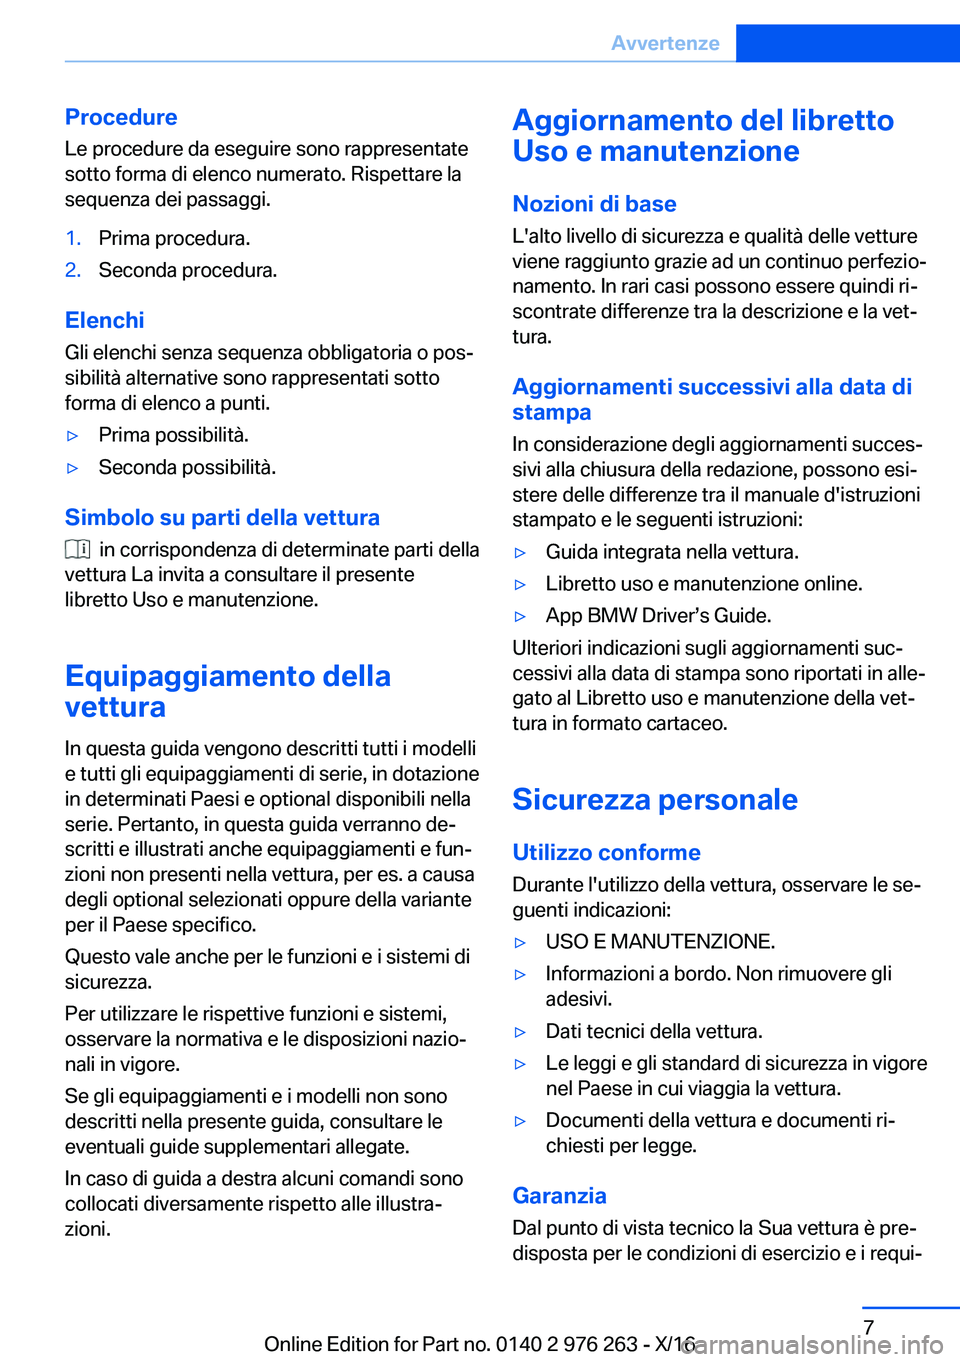 BMW 7 SERIES 2017  Libretti Di Uso E manutenzione (in Italian) �P�r�o�c�e�d�u�r�e�L�e� �p�r�o�c�e�d�u�r�e� �d�a� �e�s�e�g�u�i�r�e� �s�o�n�o� �r�a�p�p�r�e�s�e�n�t�a�t�e�s�o�t�t�o� �f�o�r�m�a� �d�i� �e�l�e�n�c�o� �n�u�m�e�r�a�t�o�.� �R�i�s�p�e�t�t�a�r�e� �l�a�s�e�q